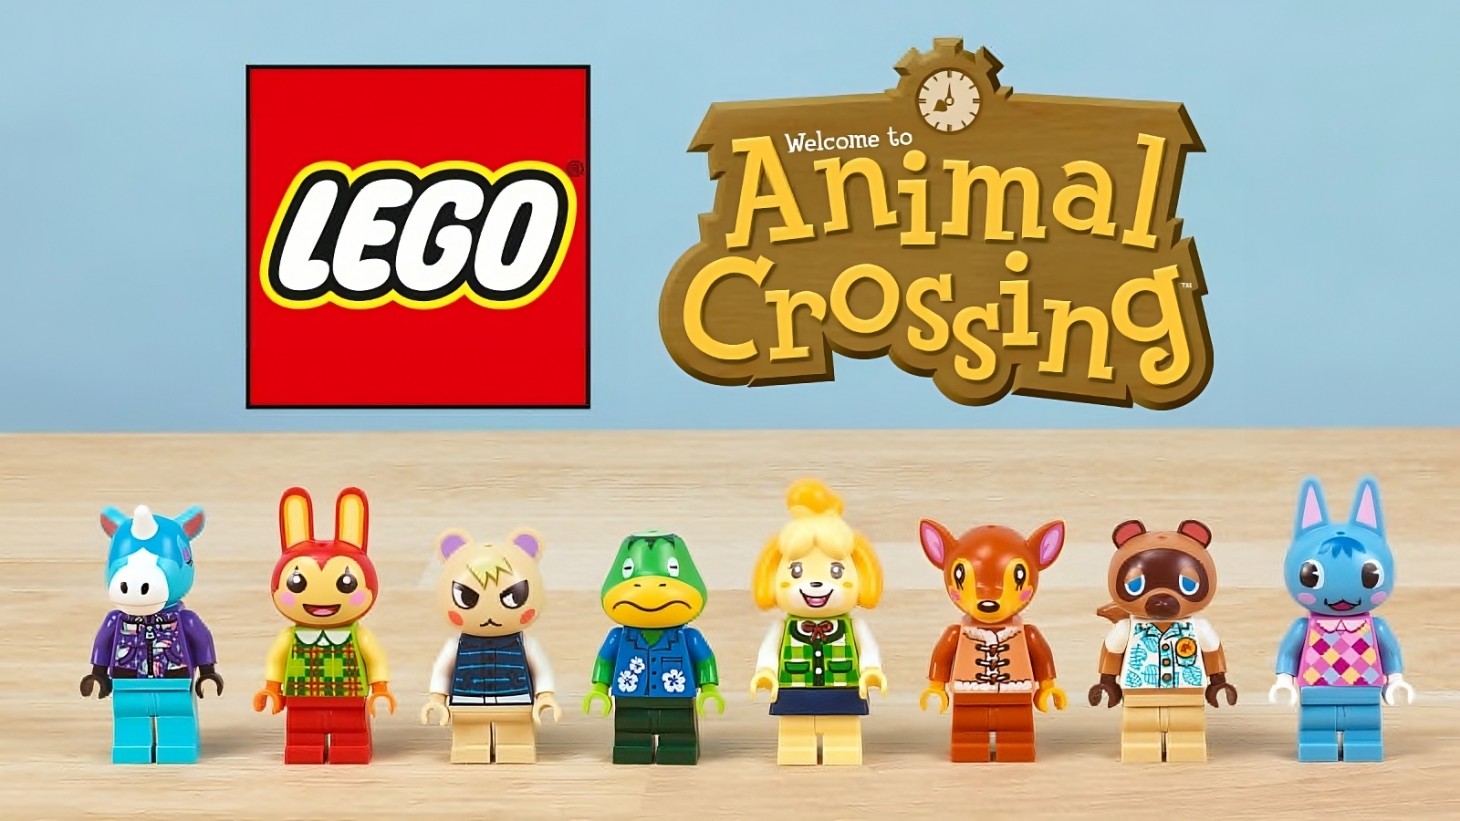 Animal Crossing Lego-Sets und Preise enthüllt